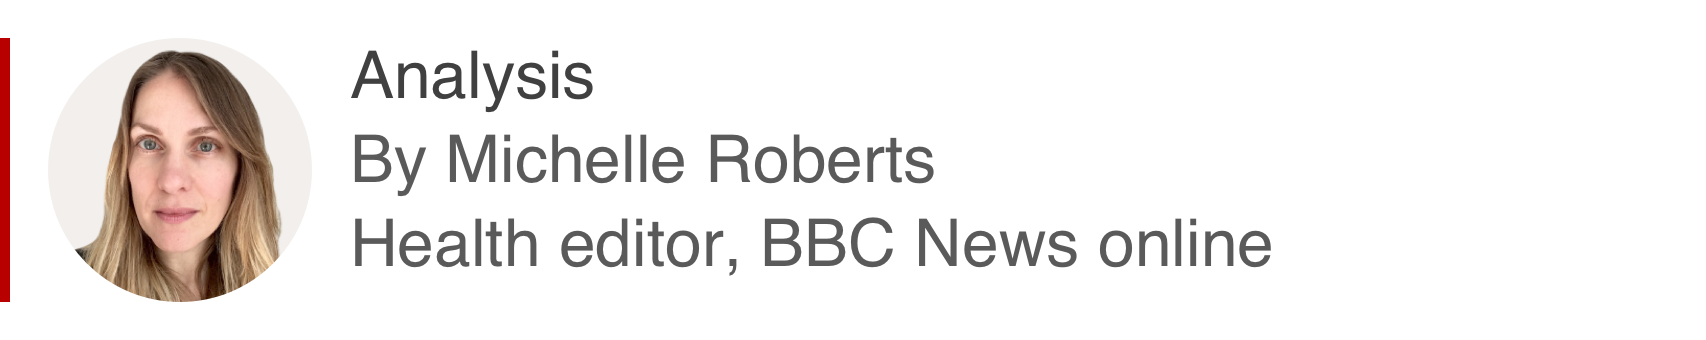 Аналитический бокс Мишель Робертс, редактора службы здравоохранения BBC News online